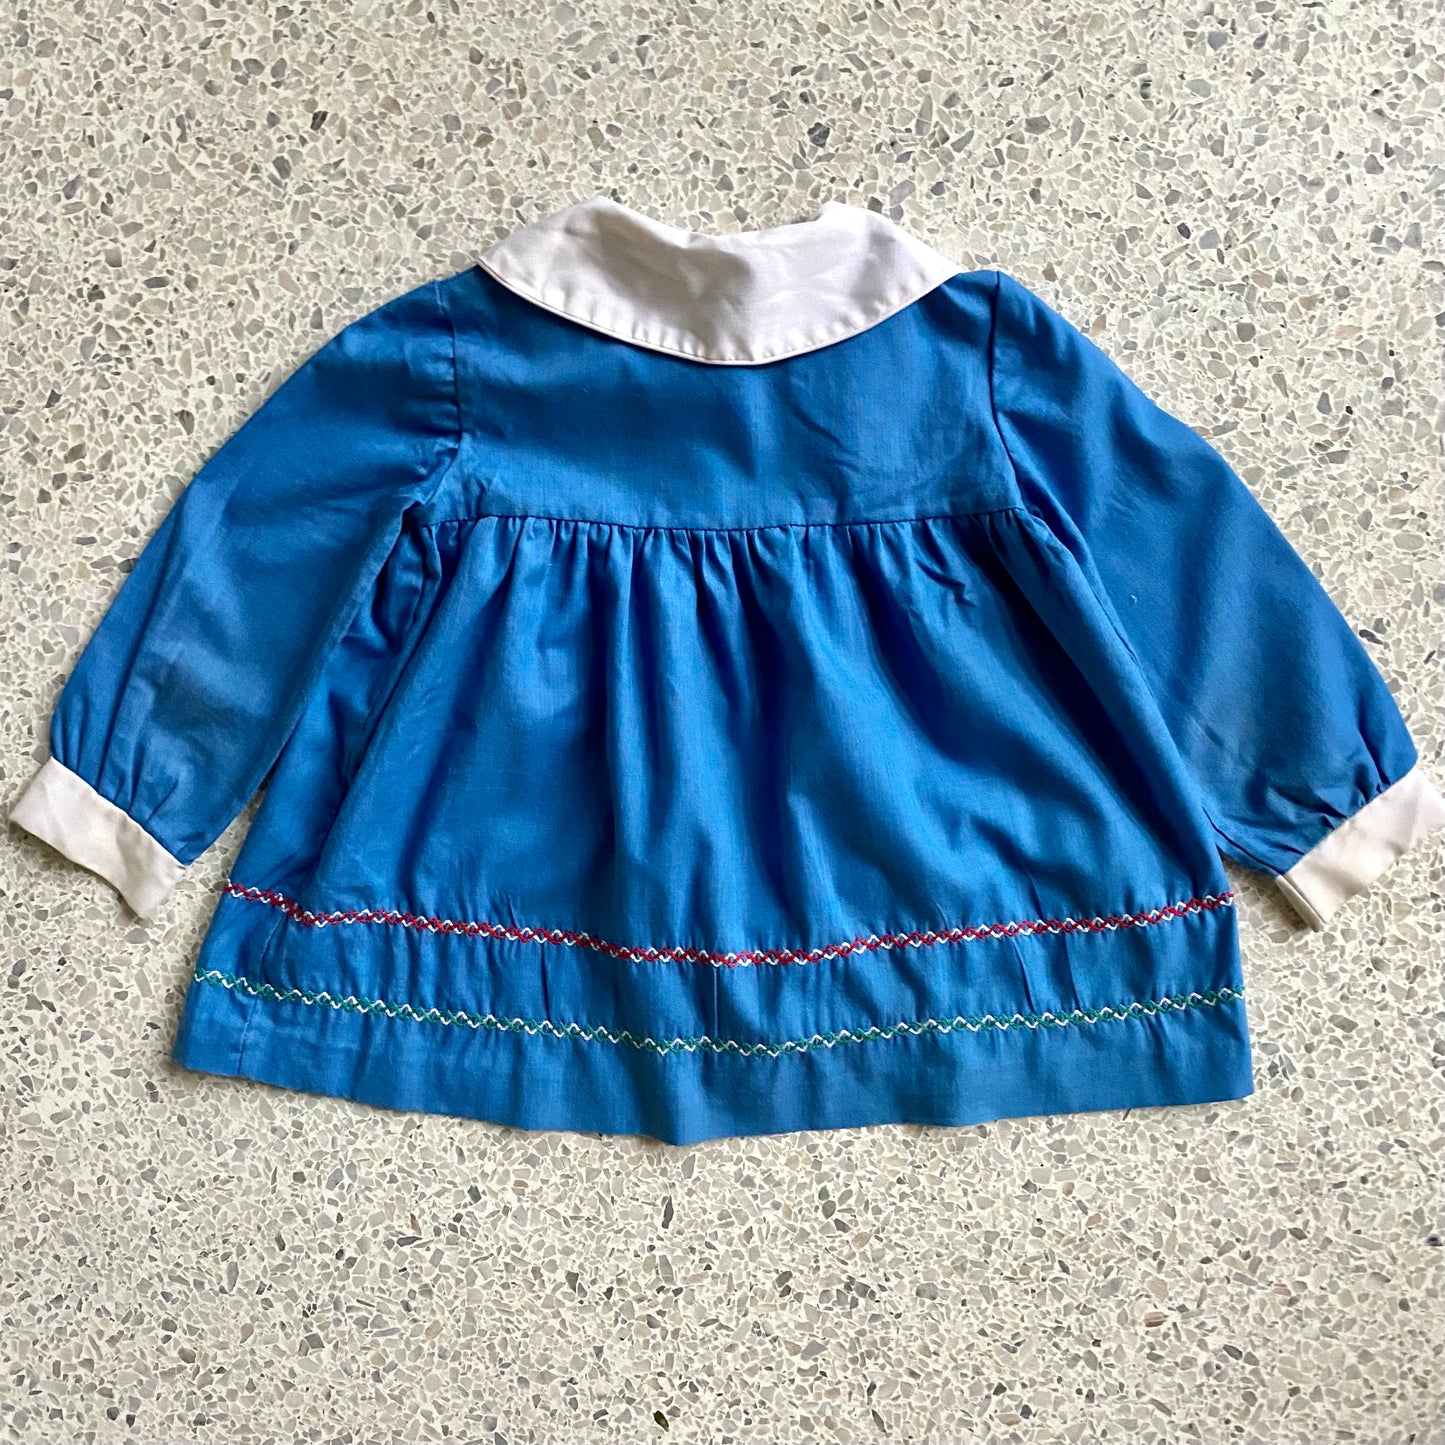 1960s Nannette Peter Pan Shirt/Dress